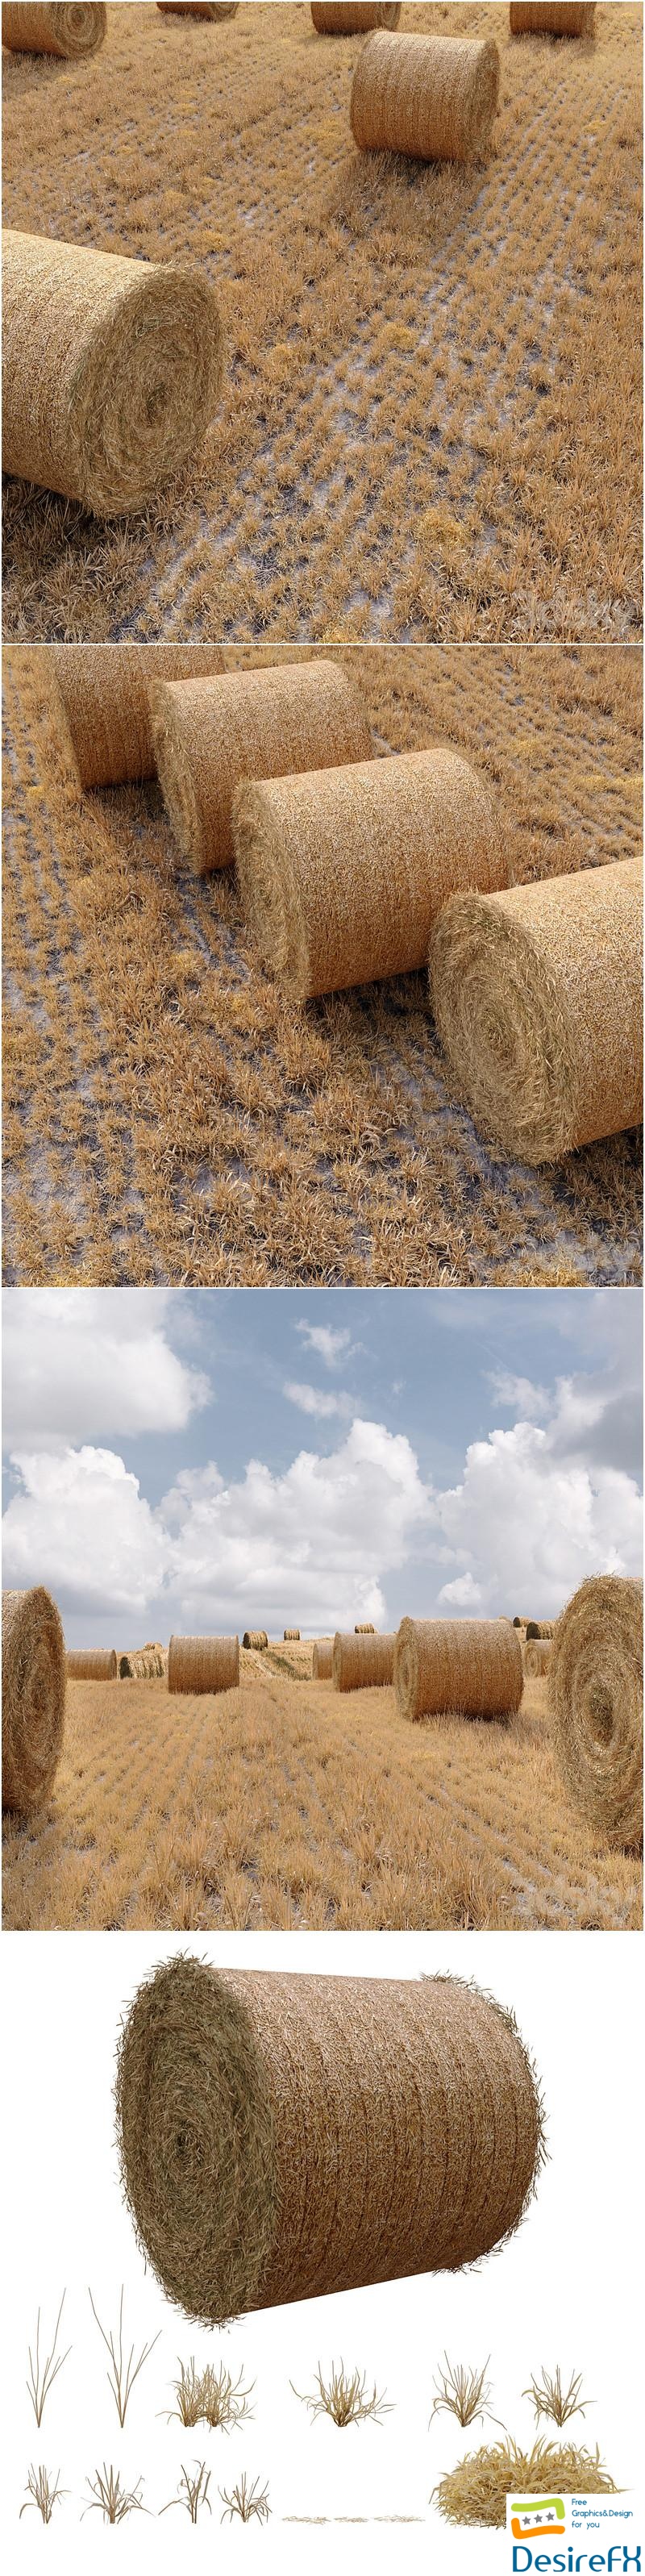 Farm field with hay bale 3D Model